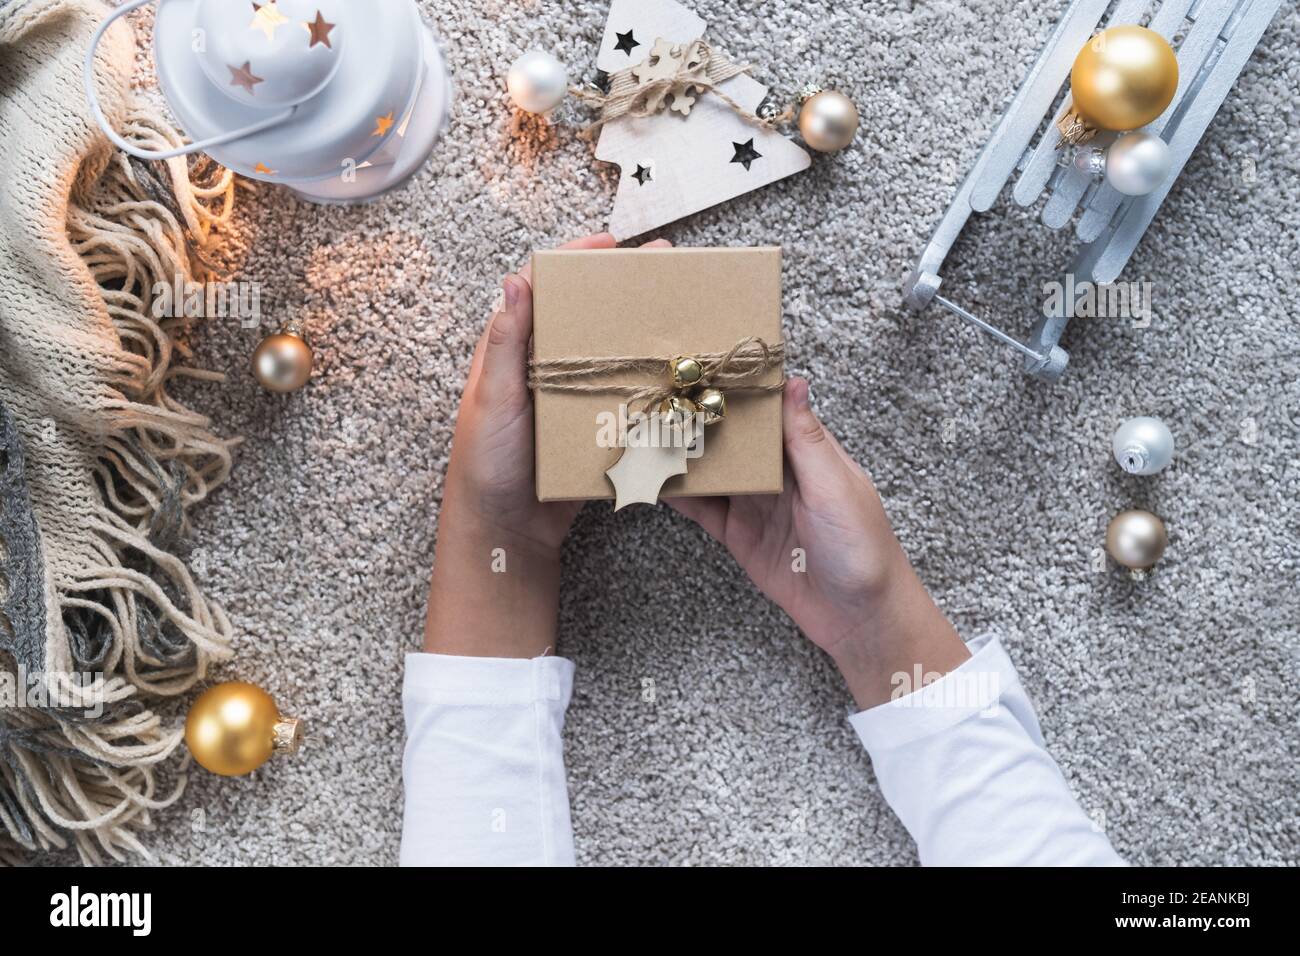 Weihnachtshintergrund mit gemütlicher Winteratmosphäre. Kinderhände mit dem Geschenk für das neue Jahr. Stockfoto